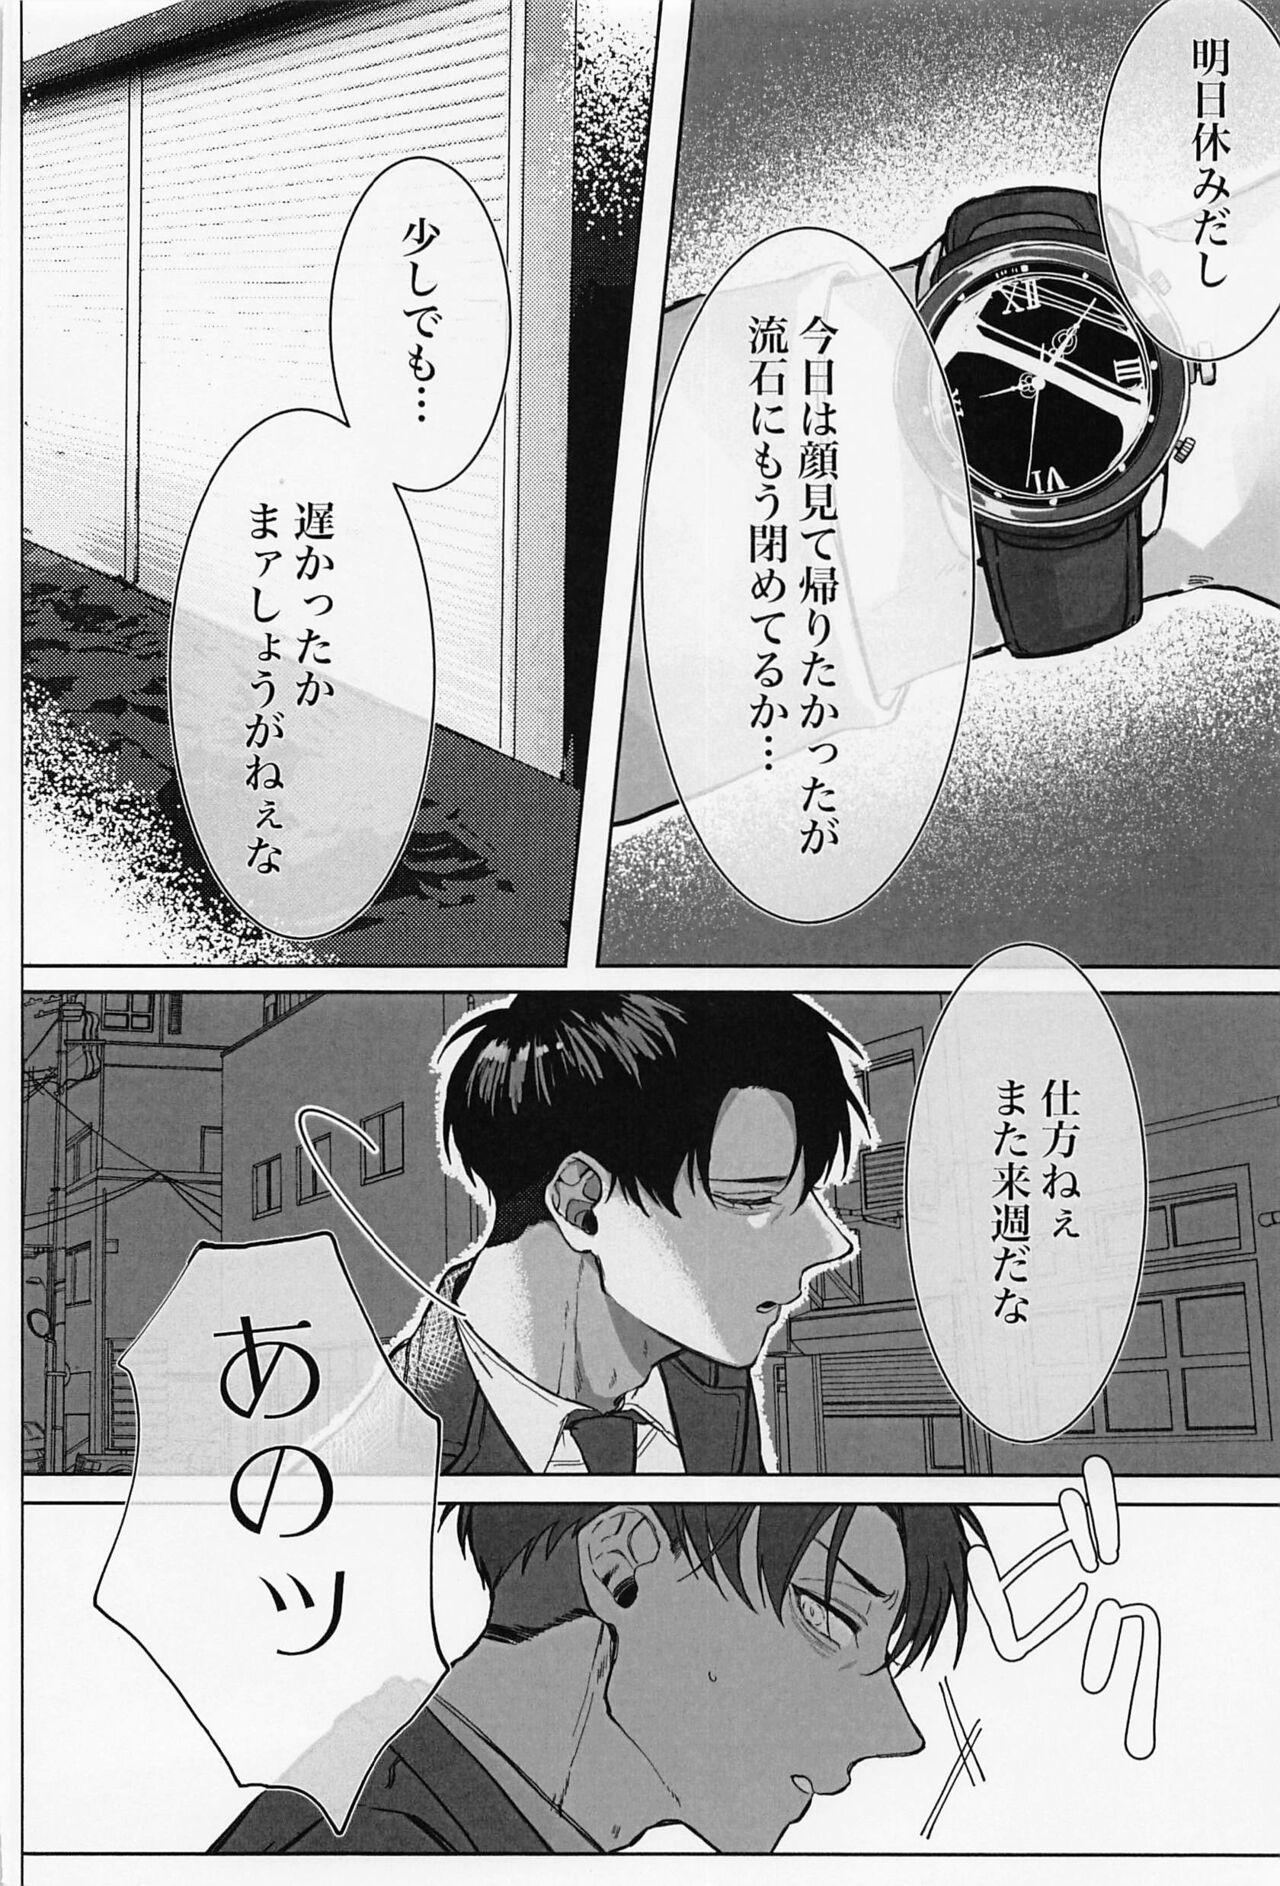 Teenage Porn Kao ga Type no Hanaya no no Tenin ni Omochikaeri Saretara - Shingeki no kyojin | attack on titan Gay Porn - Page 11